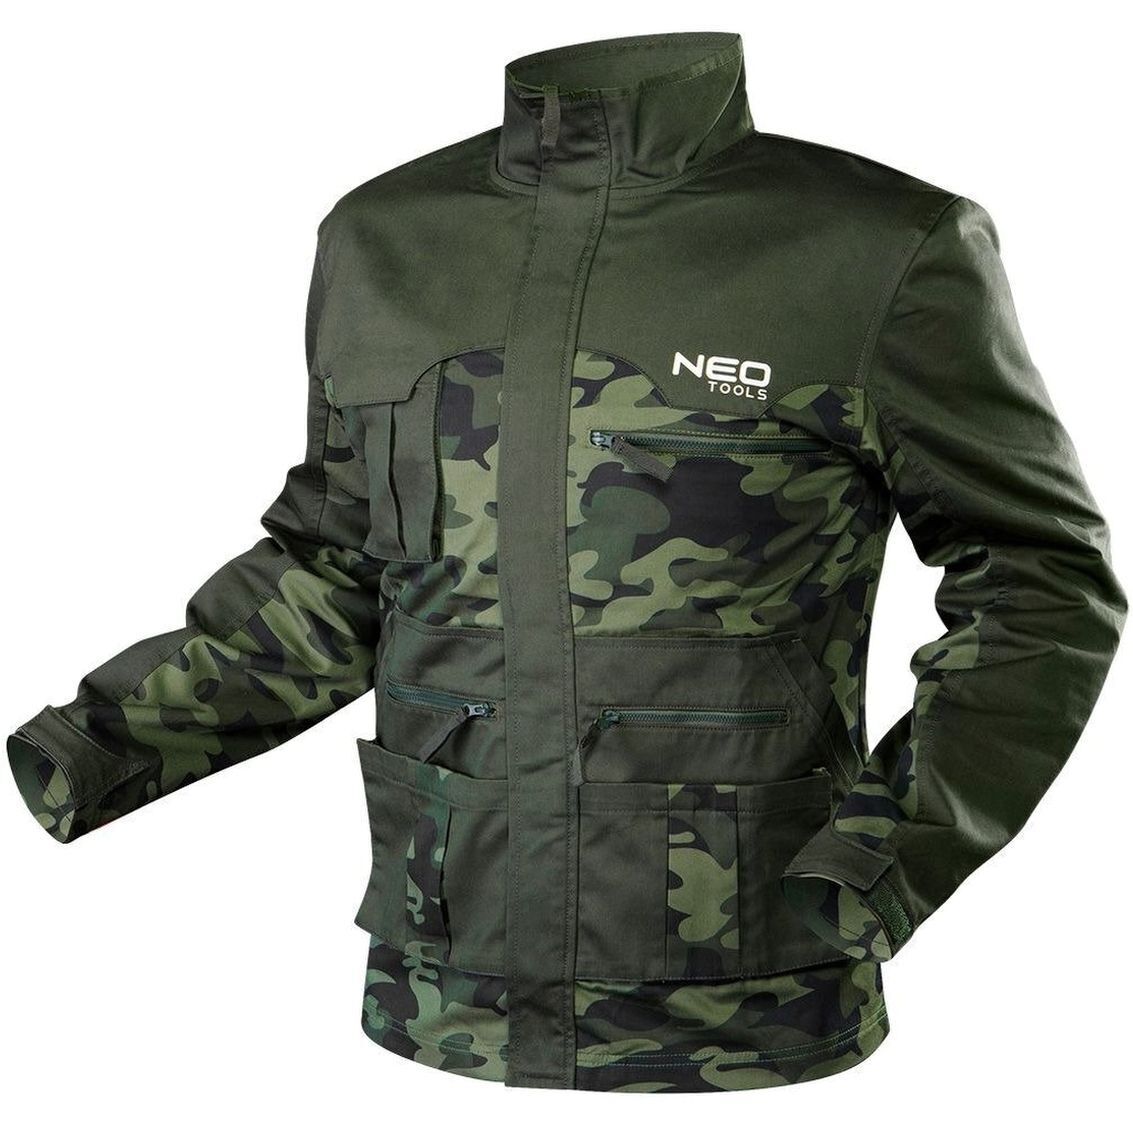 Робоча куртка Neo Tools CAMO, розмір S/48 (81-211-S)фото1